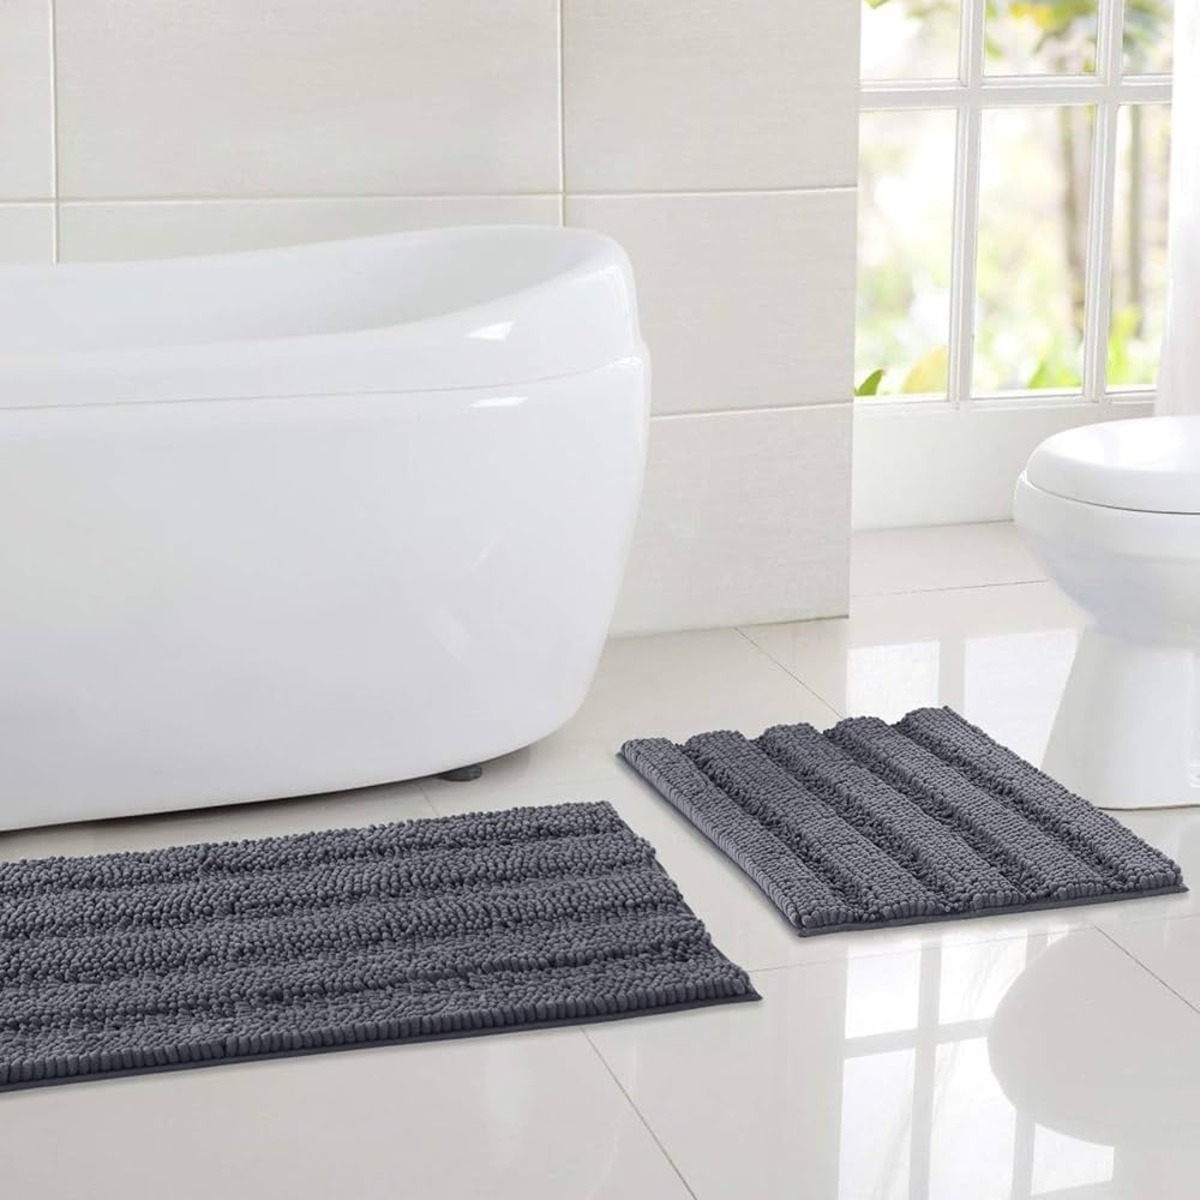 KMAT Bathroom Rugs Bath Mat 20x32 In,Luxury Soft Shaggy